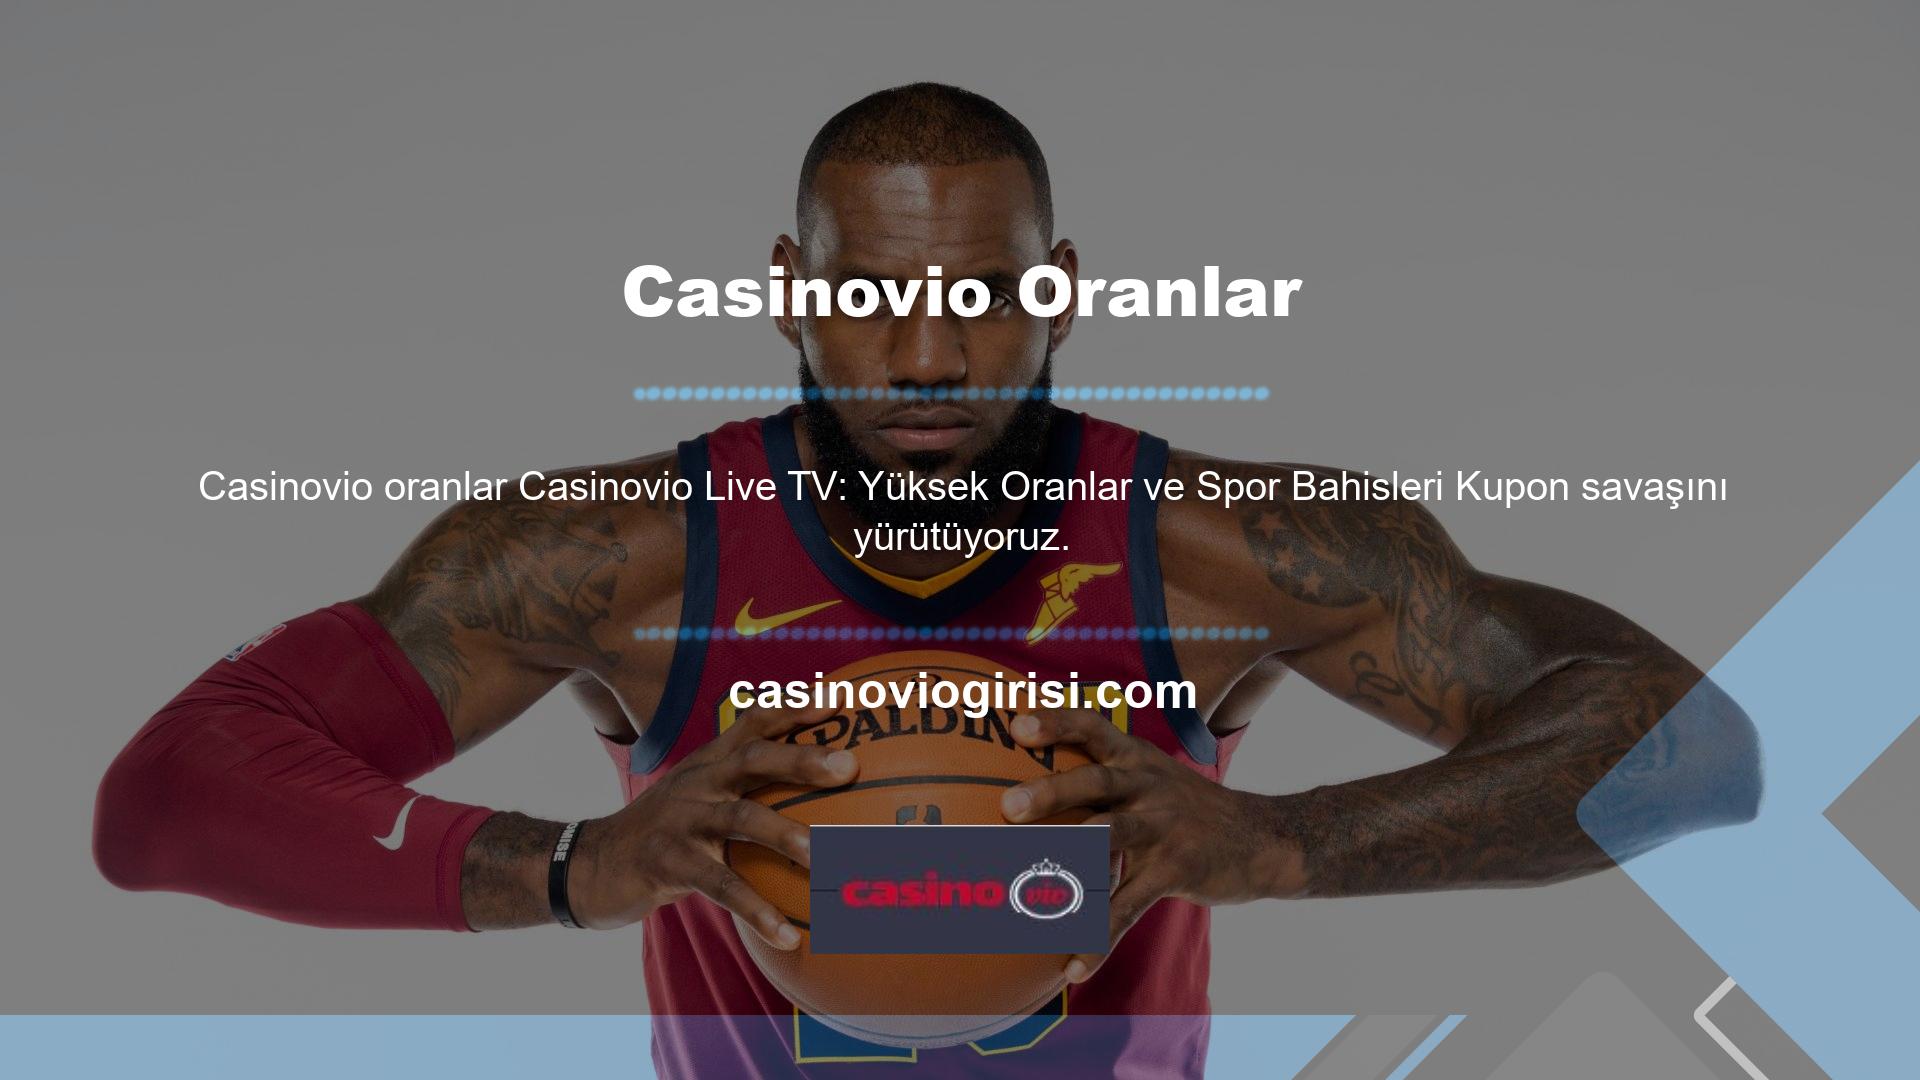 Casinovio spor bahisleri ve yüksek oranlar ile canlı TV platformunda aktif ve tutarlı bir şekilde yer almaktadır